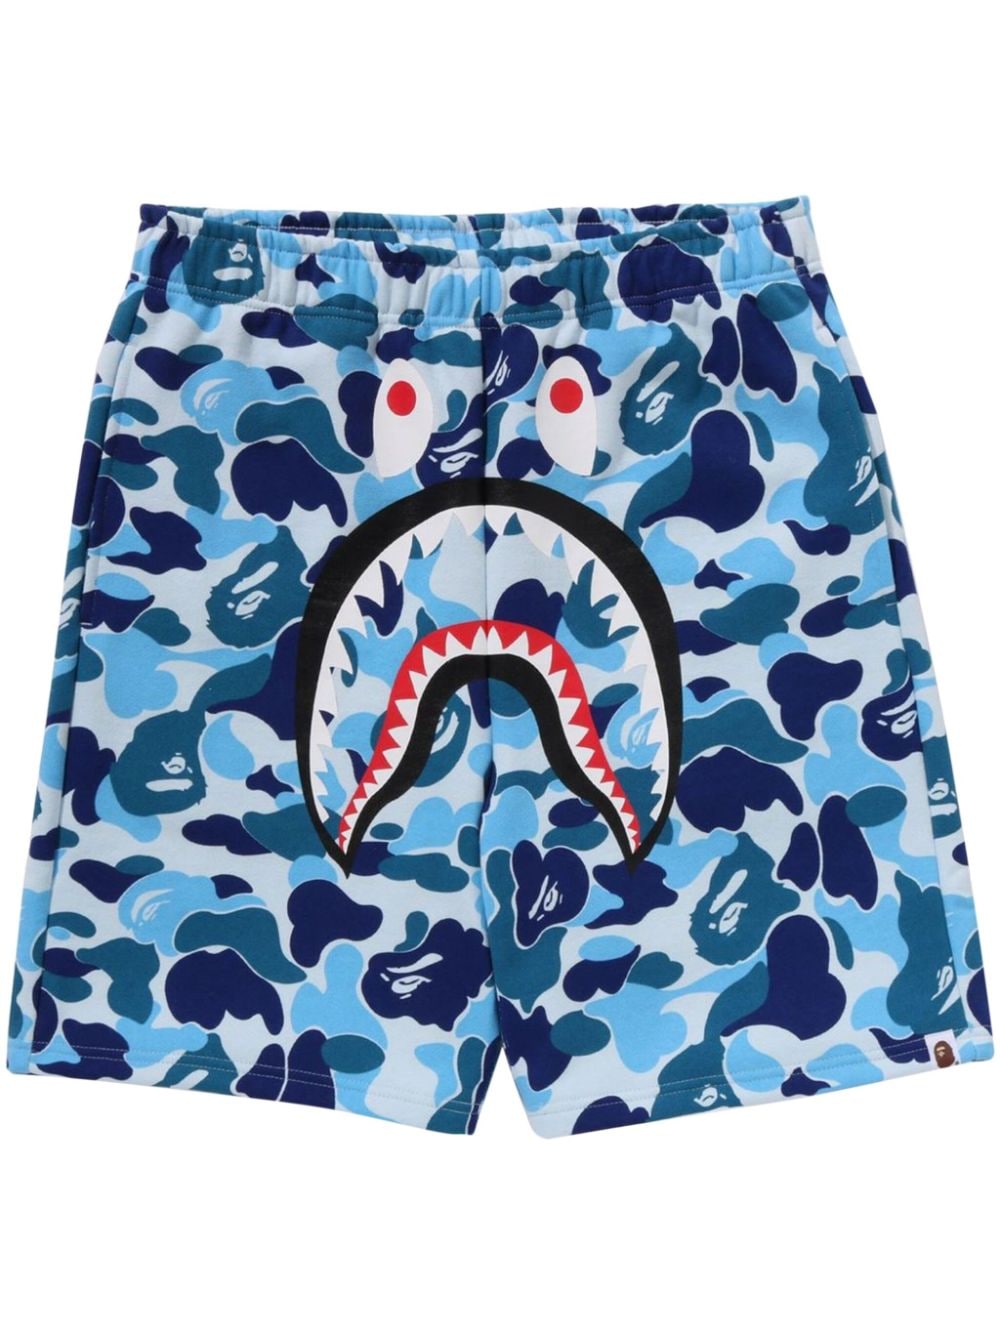 Abc Camo Shark track shorts